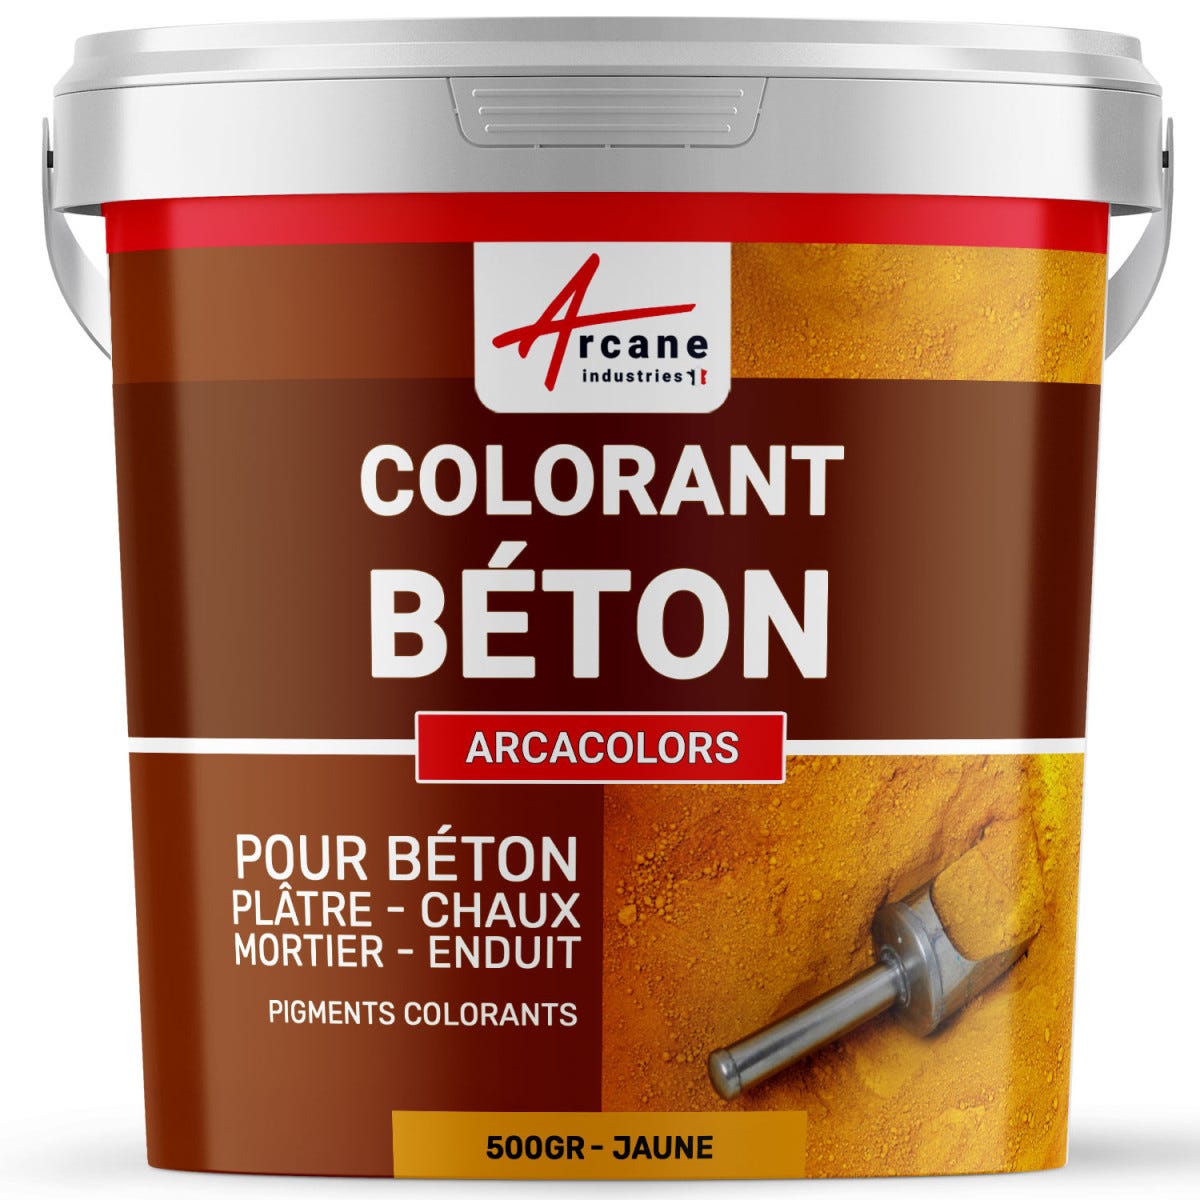 Pigments Colorants Premium pour enduit, béton, mortier, chaux, platre - ARCACOLORS - 500 gr - Jaune - ARCANE INDUSTRIES 0